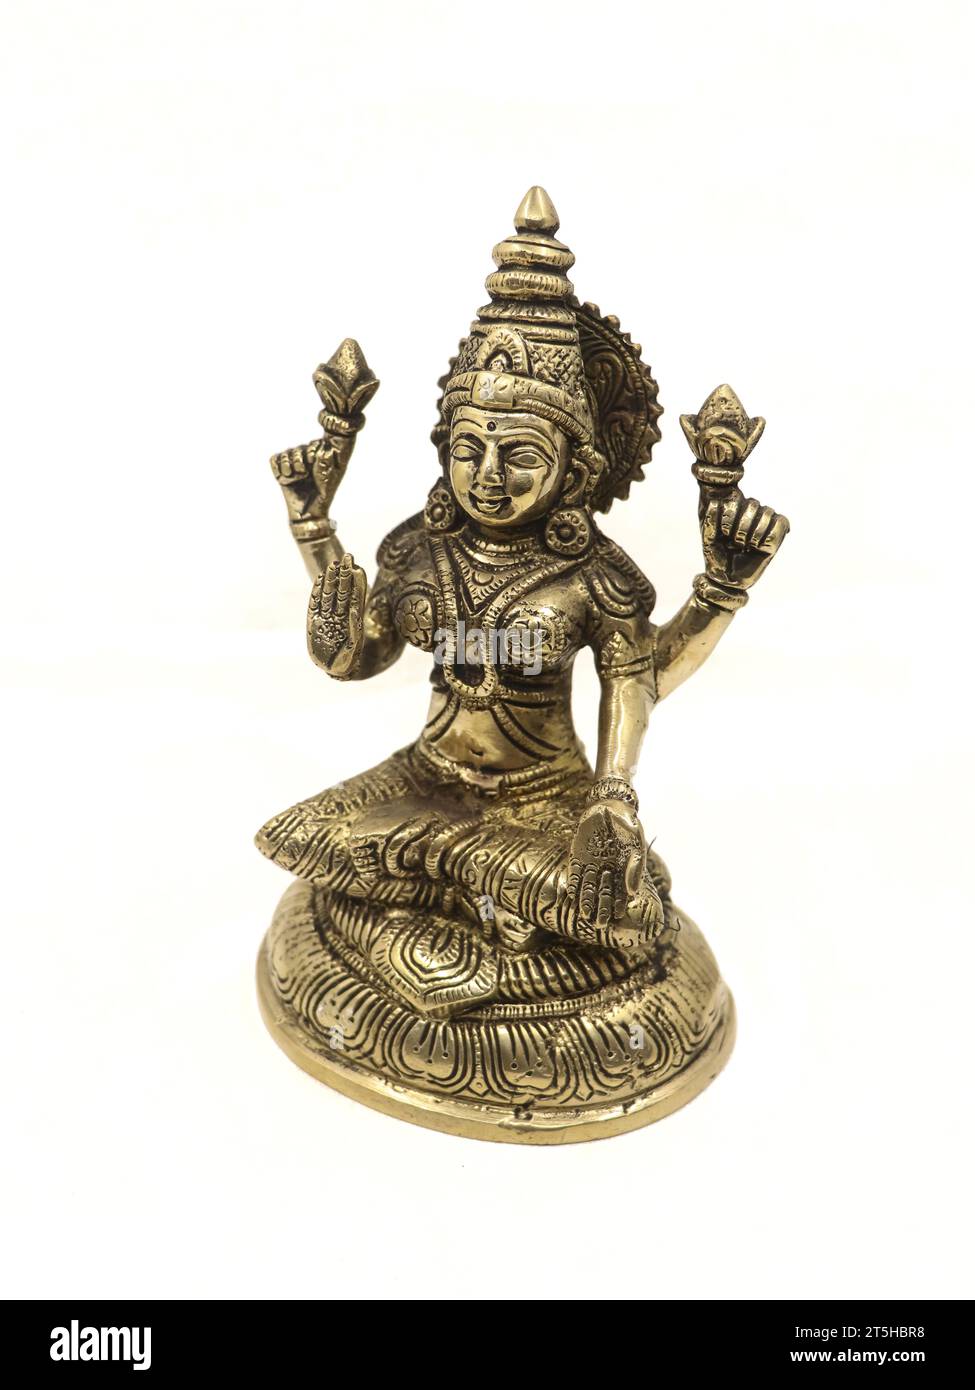 antica statua in bronzo della dea indù lakshmi realizzata a mano con dettagli isolati su uno sfondo bianco Foto Stock